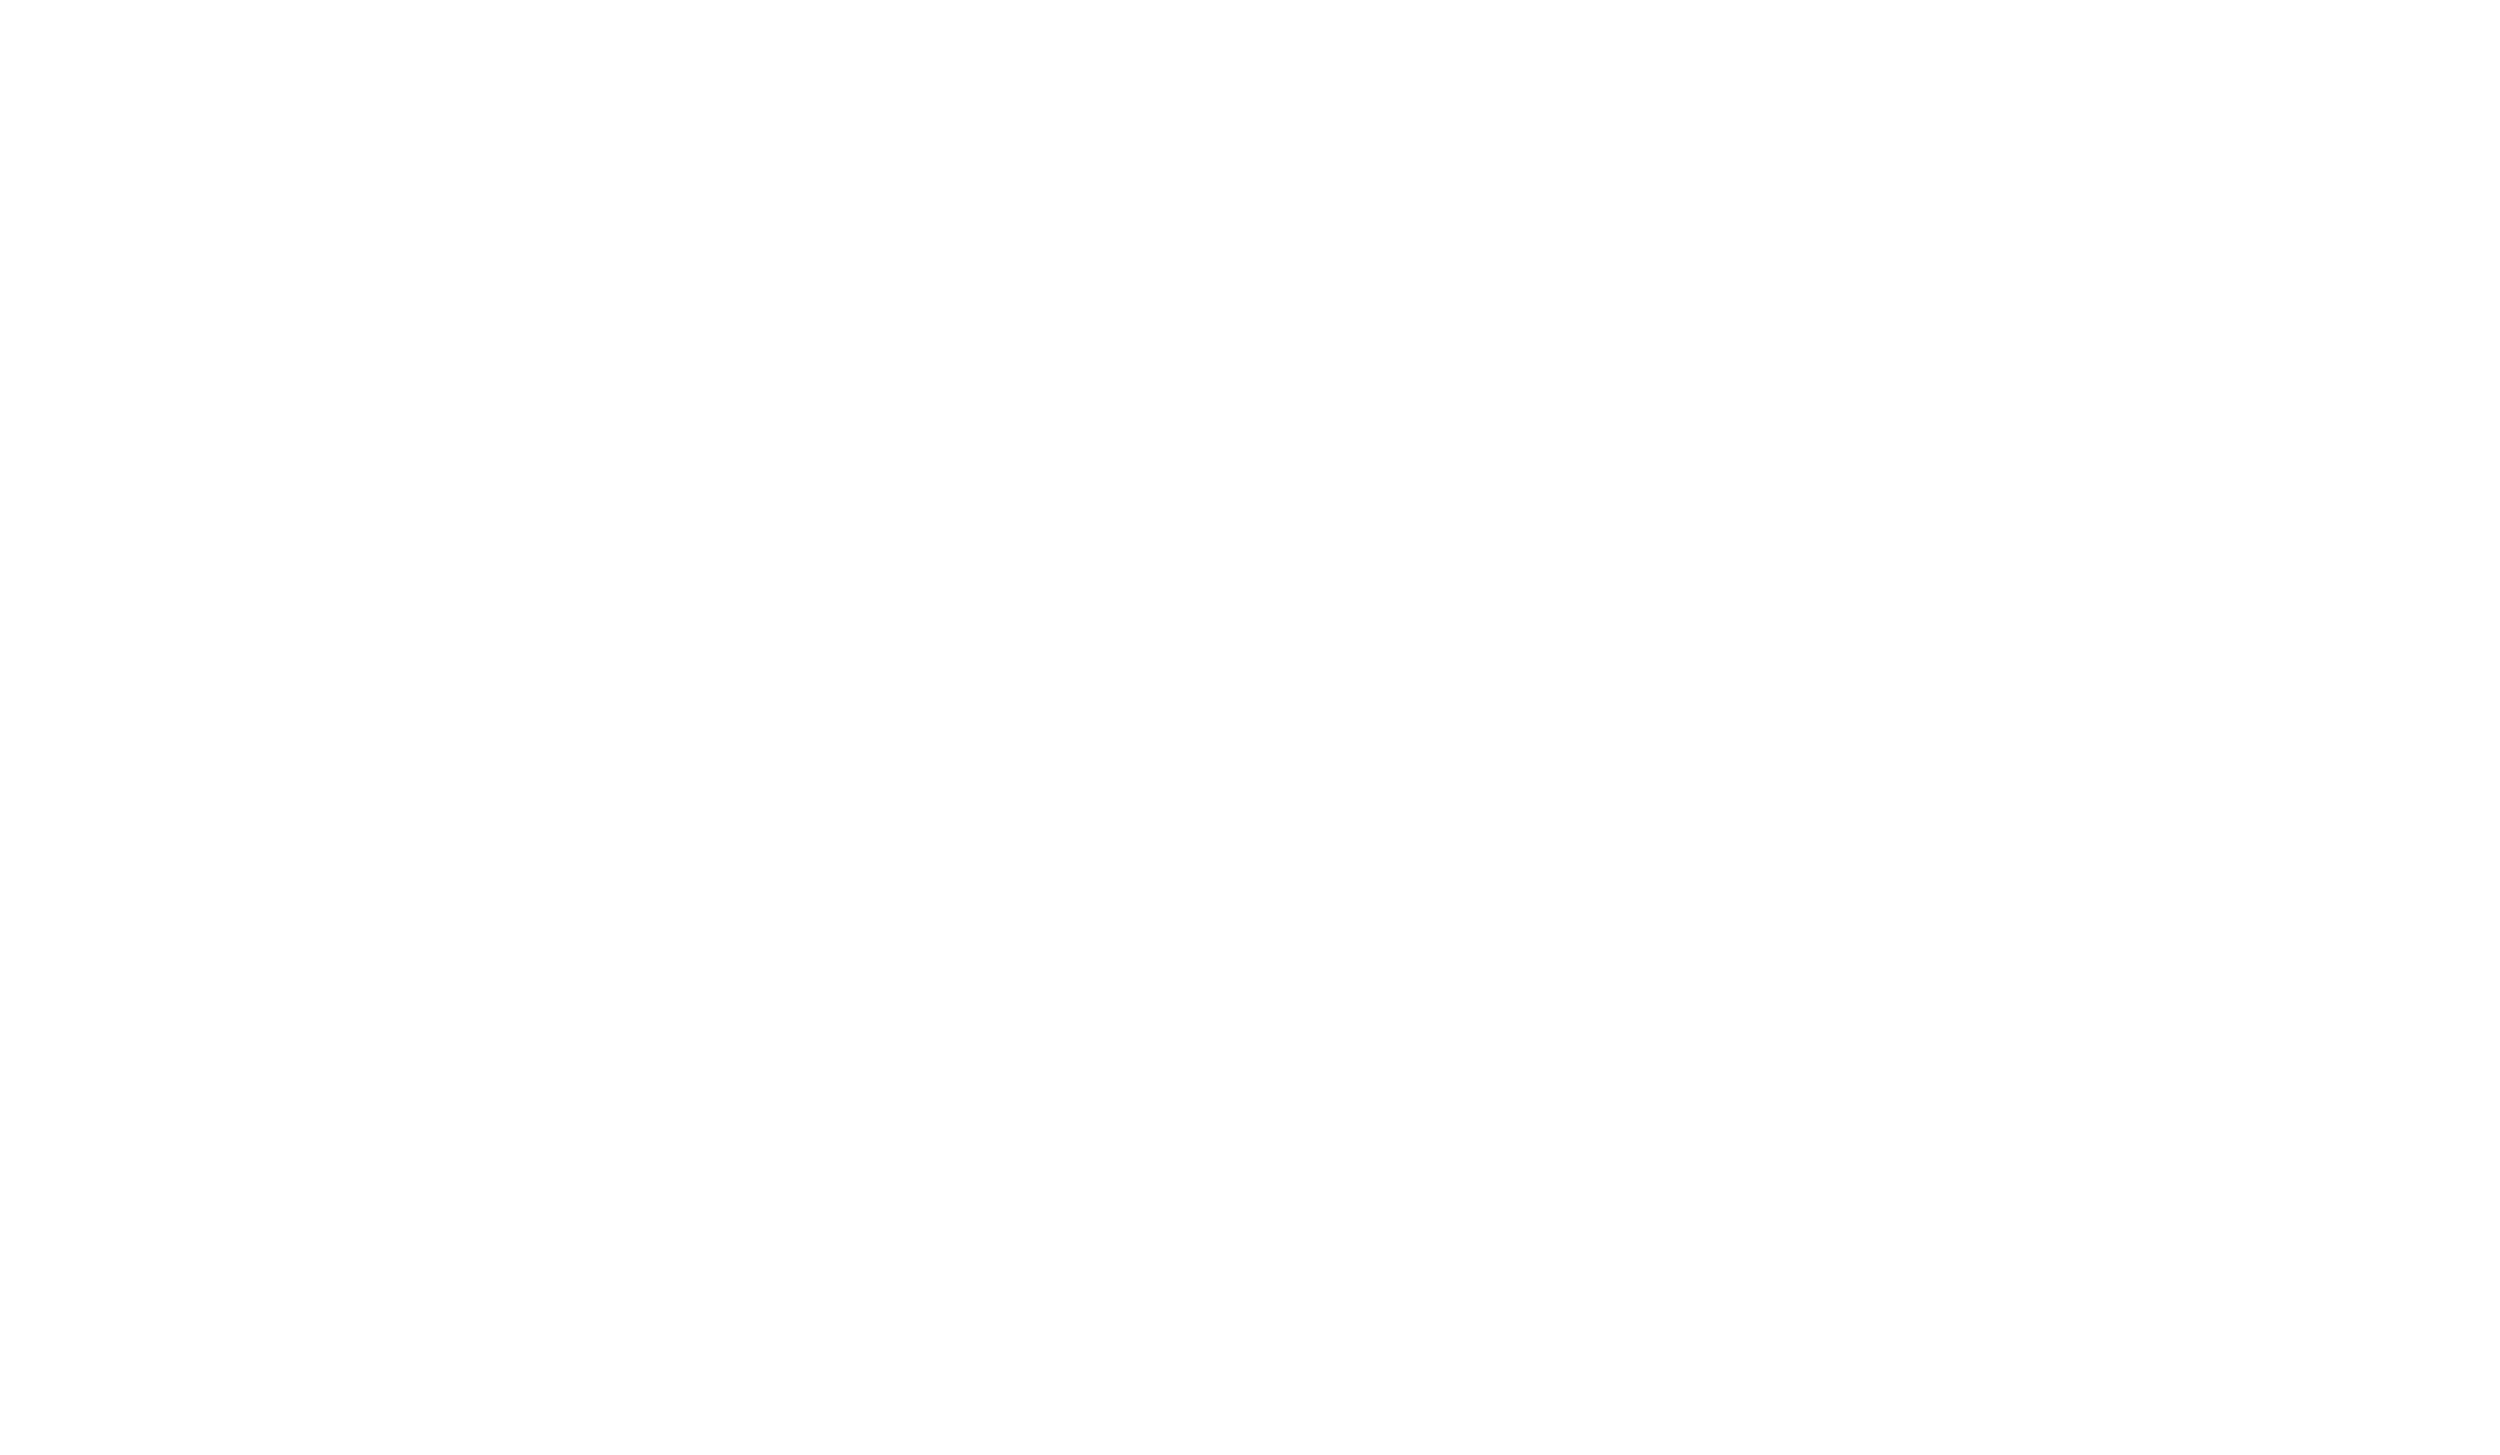 The Linda Grams